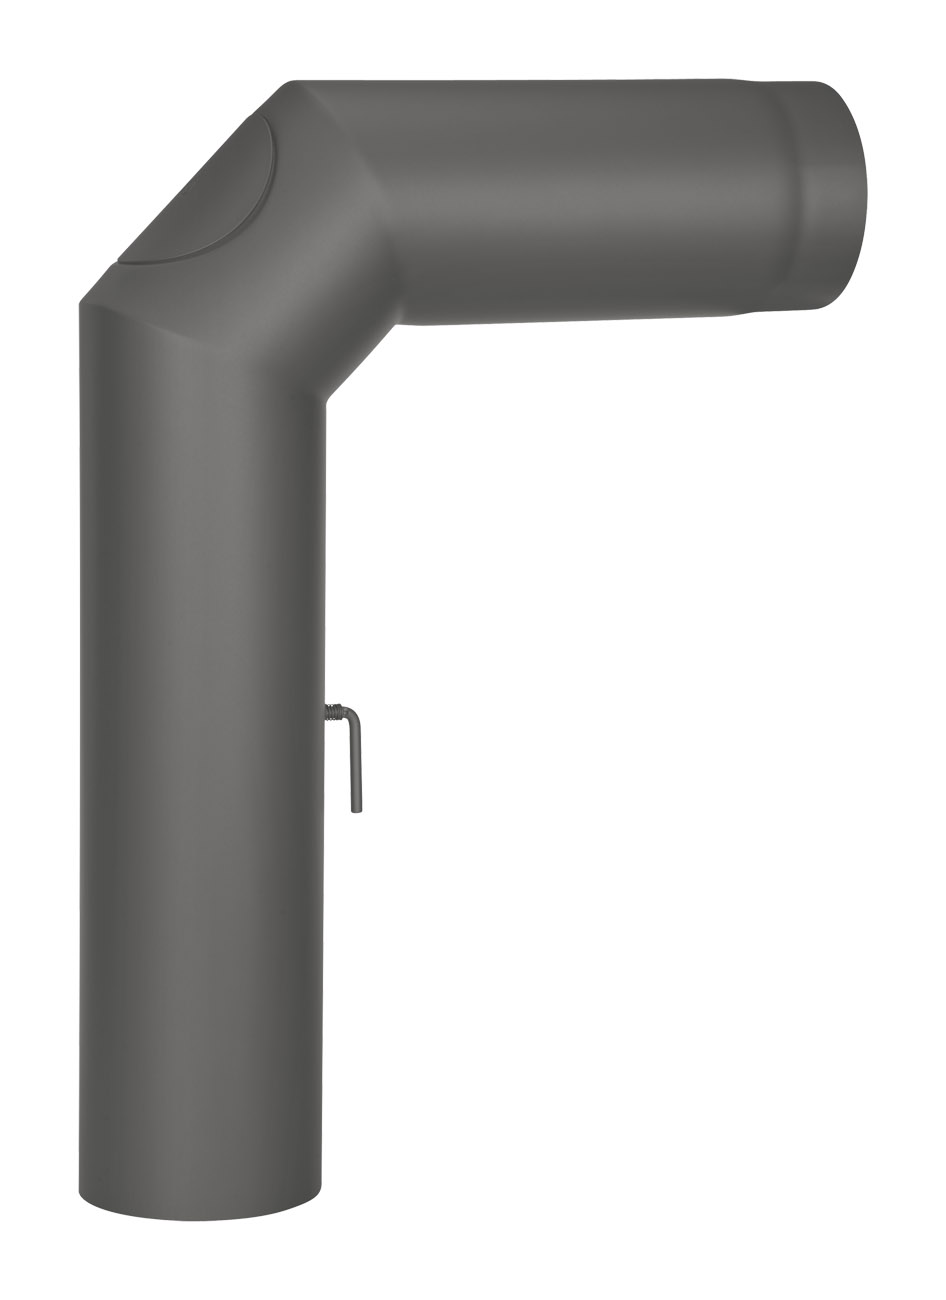 Anschlussrohr Stahl 2x 45° 700 x 500 mm schwarz mit Tür, Drosselklappe